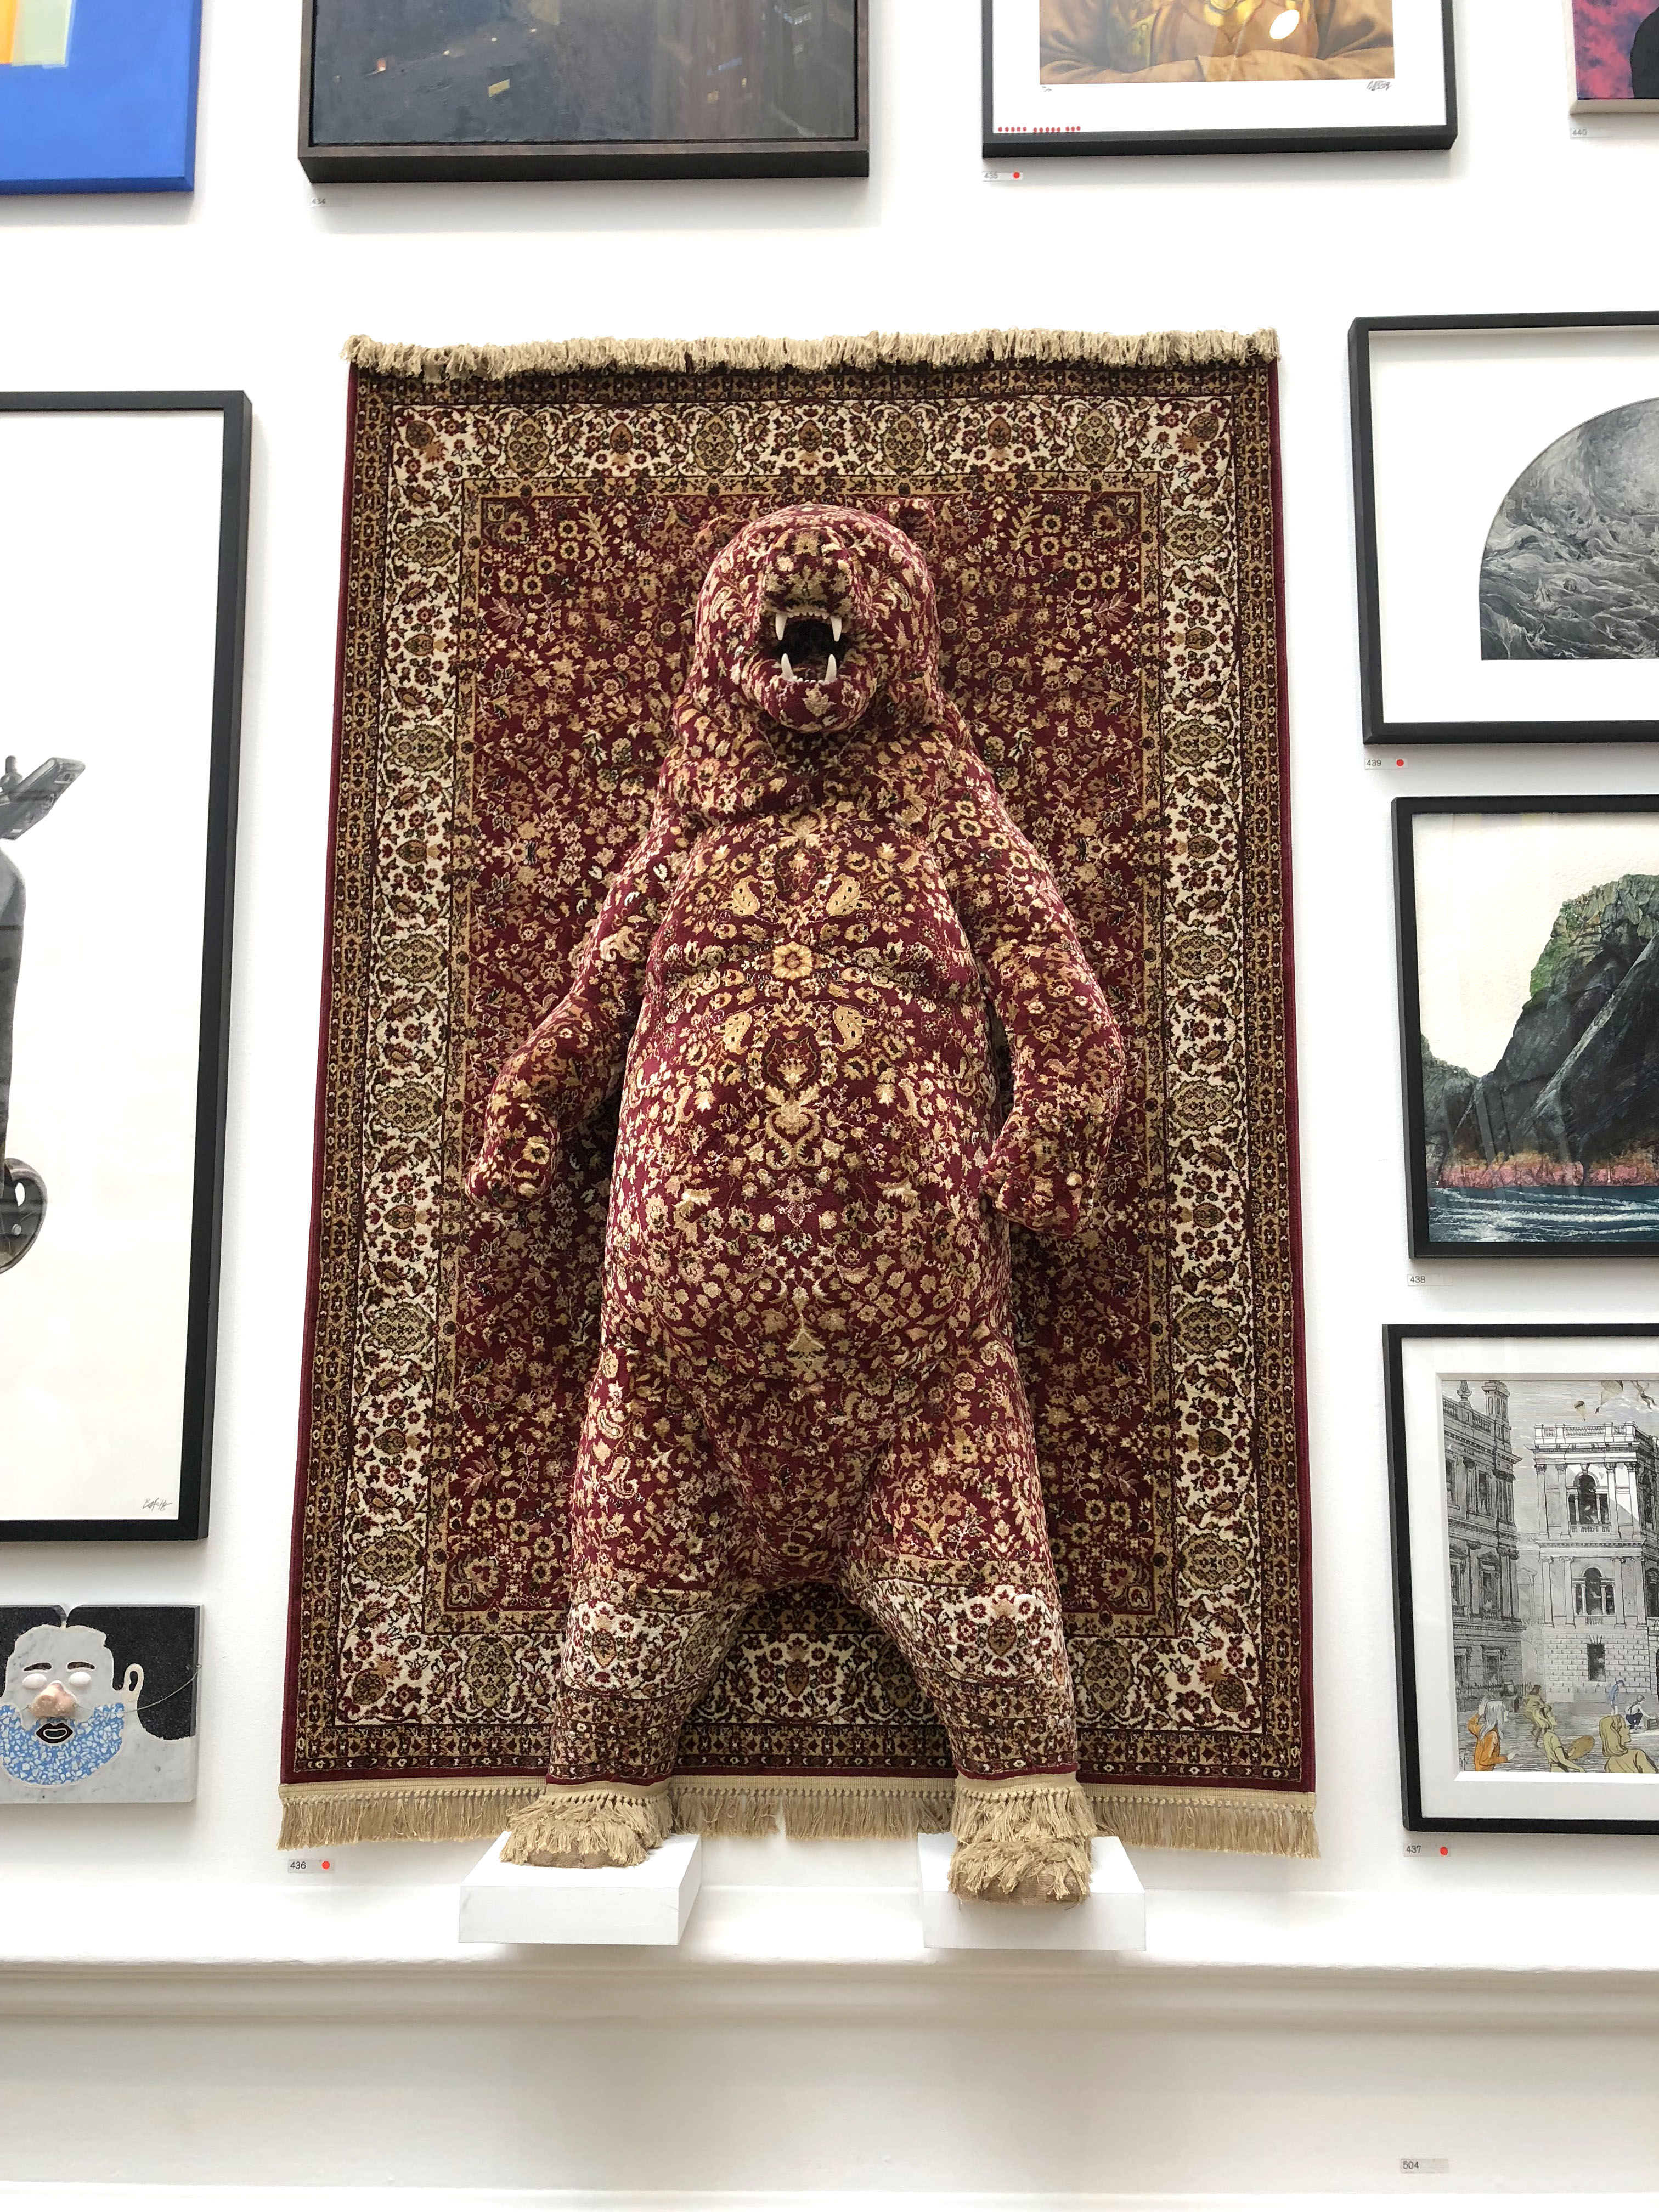 Red Bear by Debbie Lawson